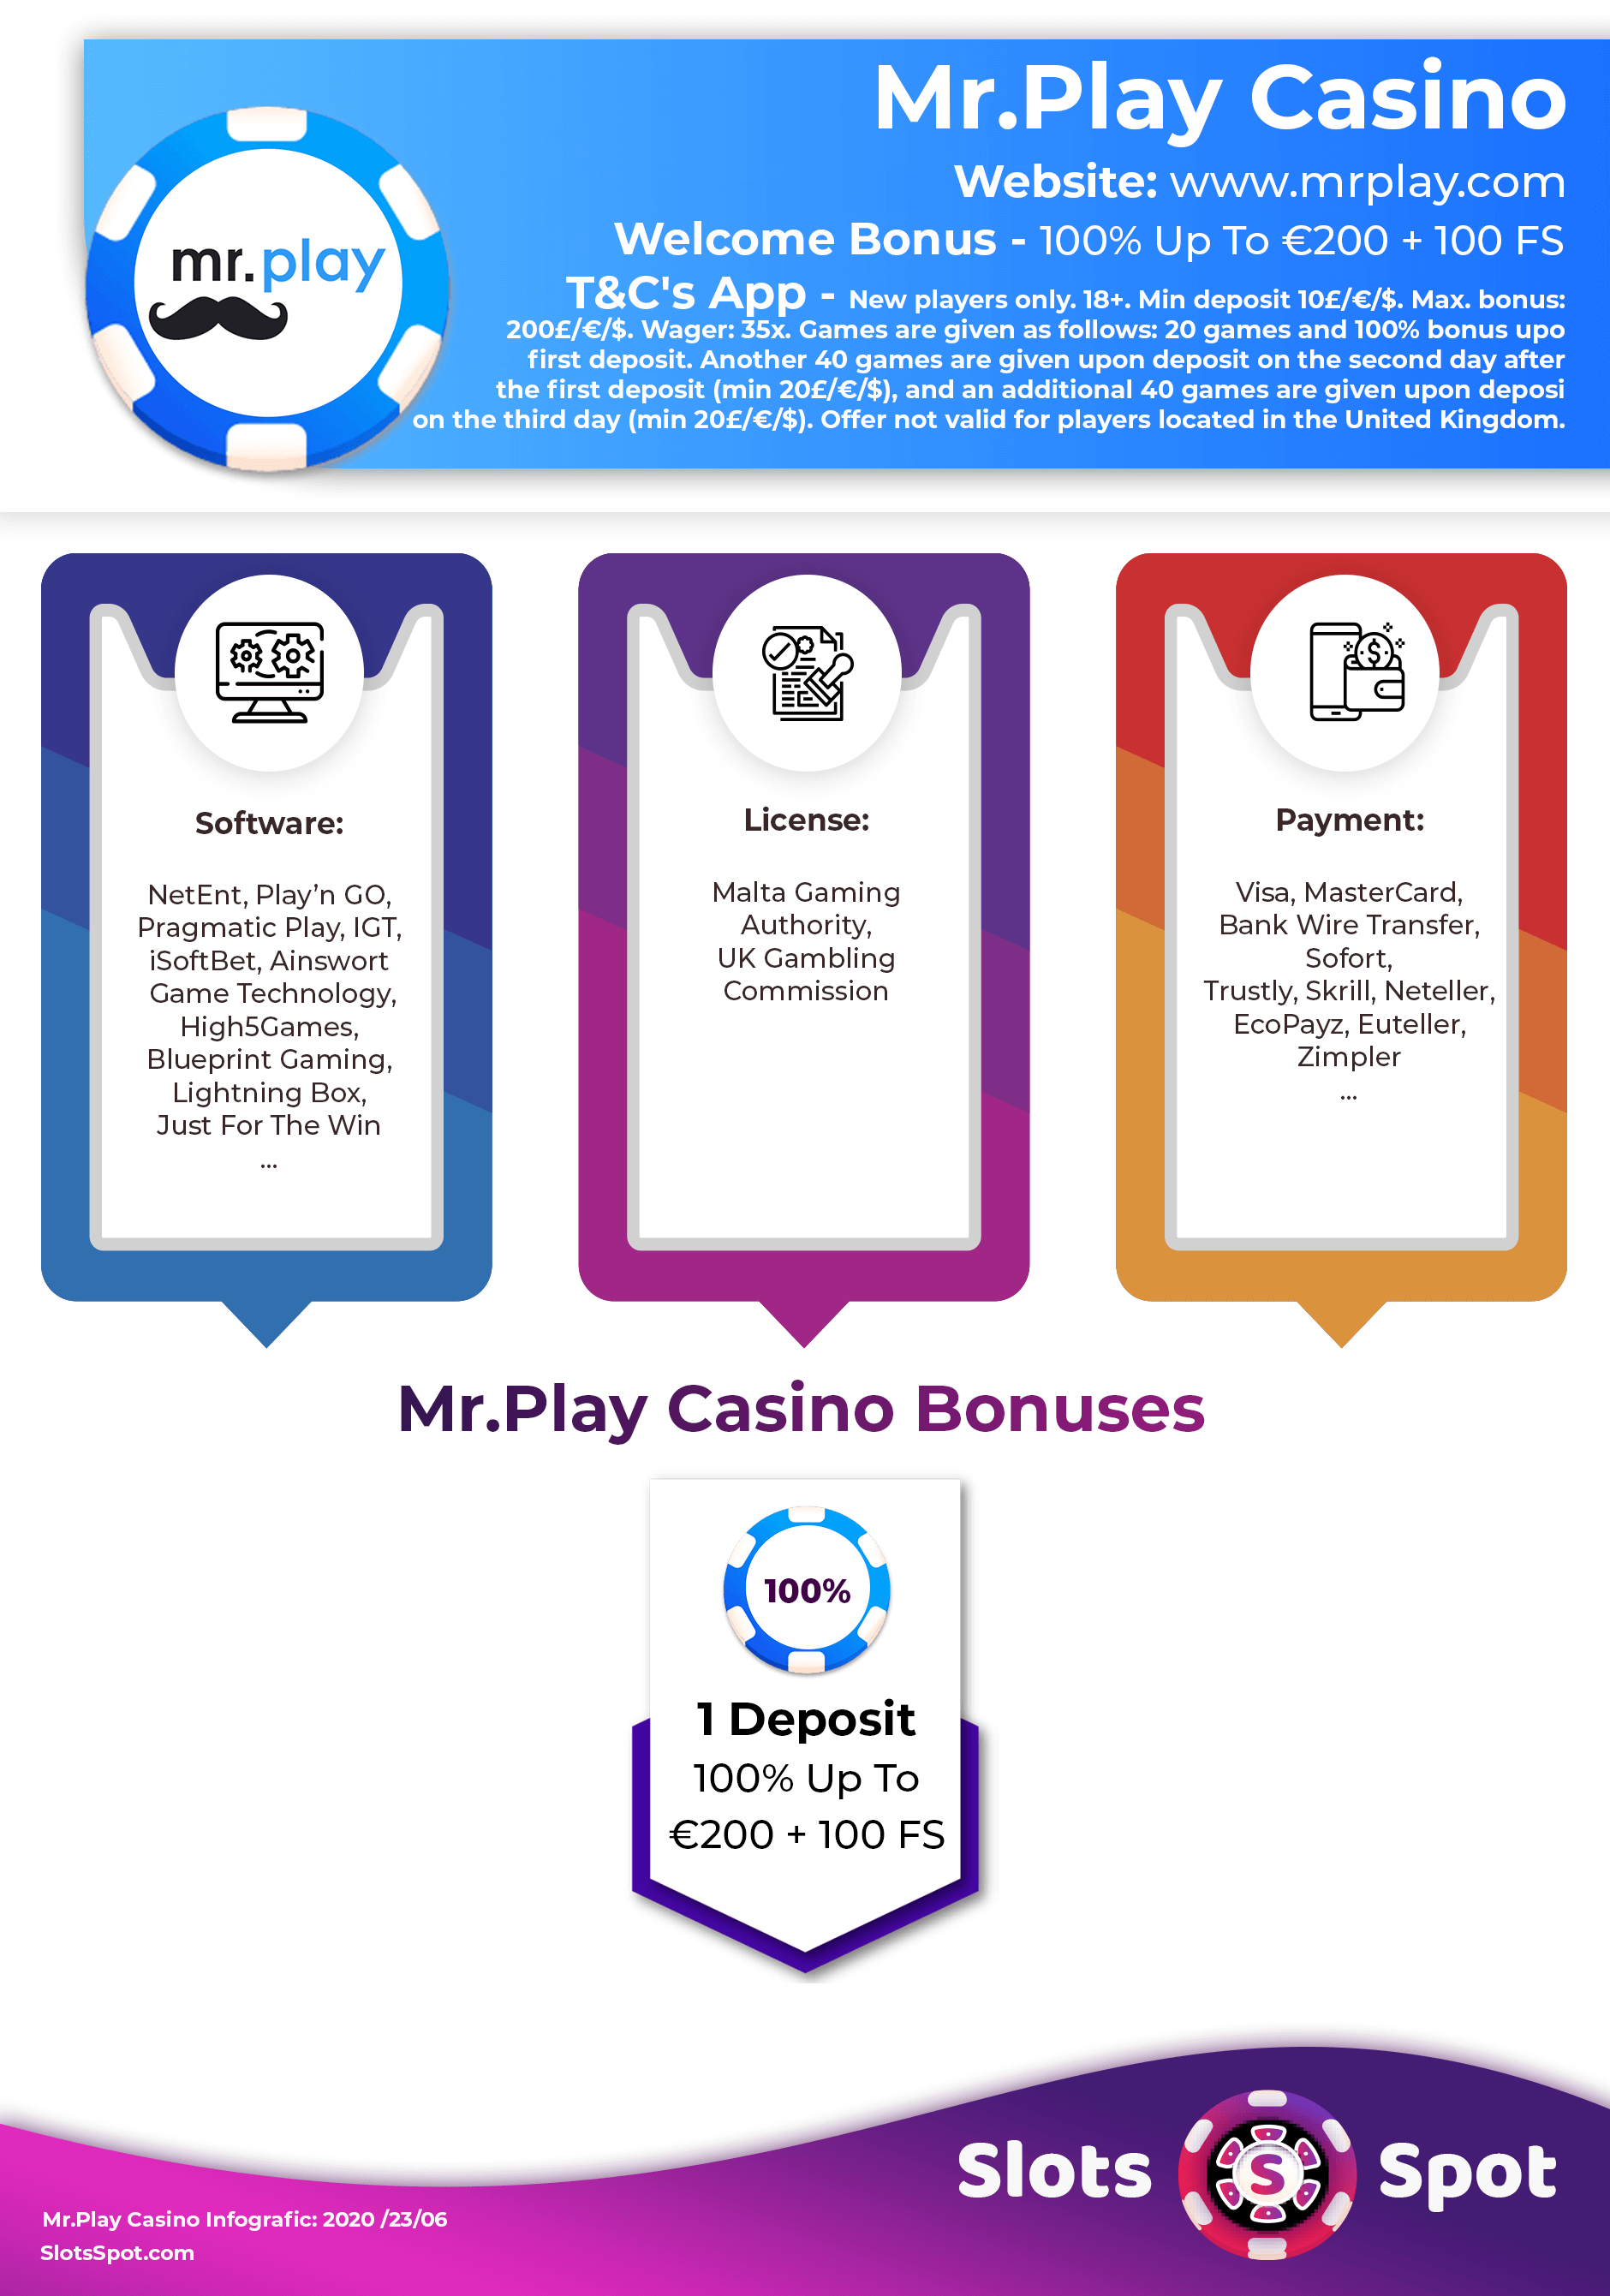 yako casino no deposit bonus code